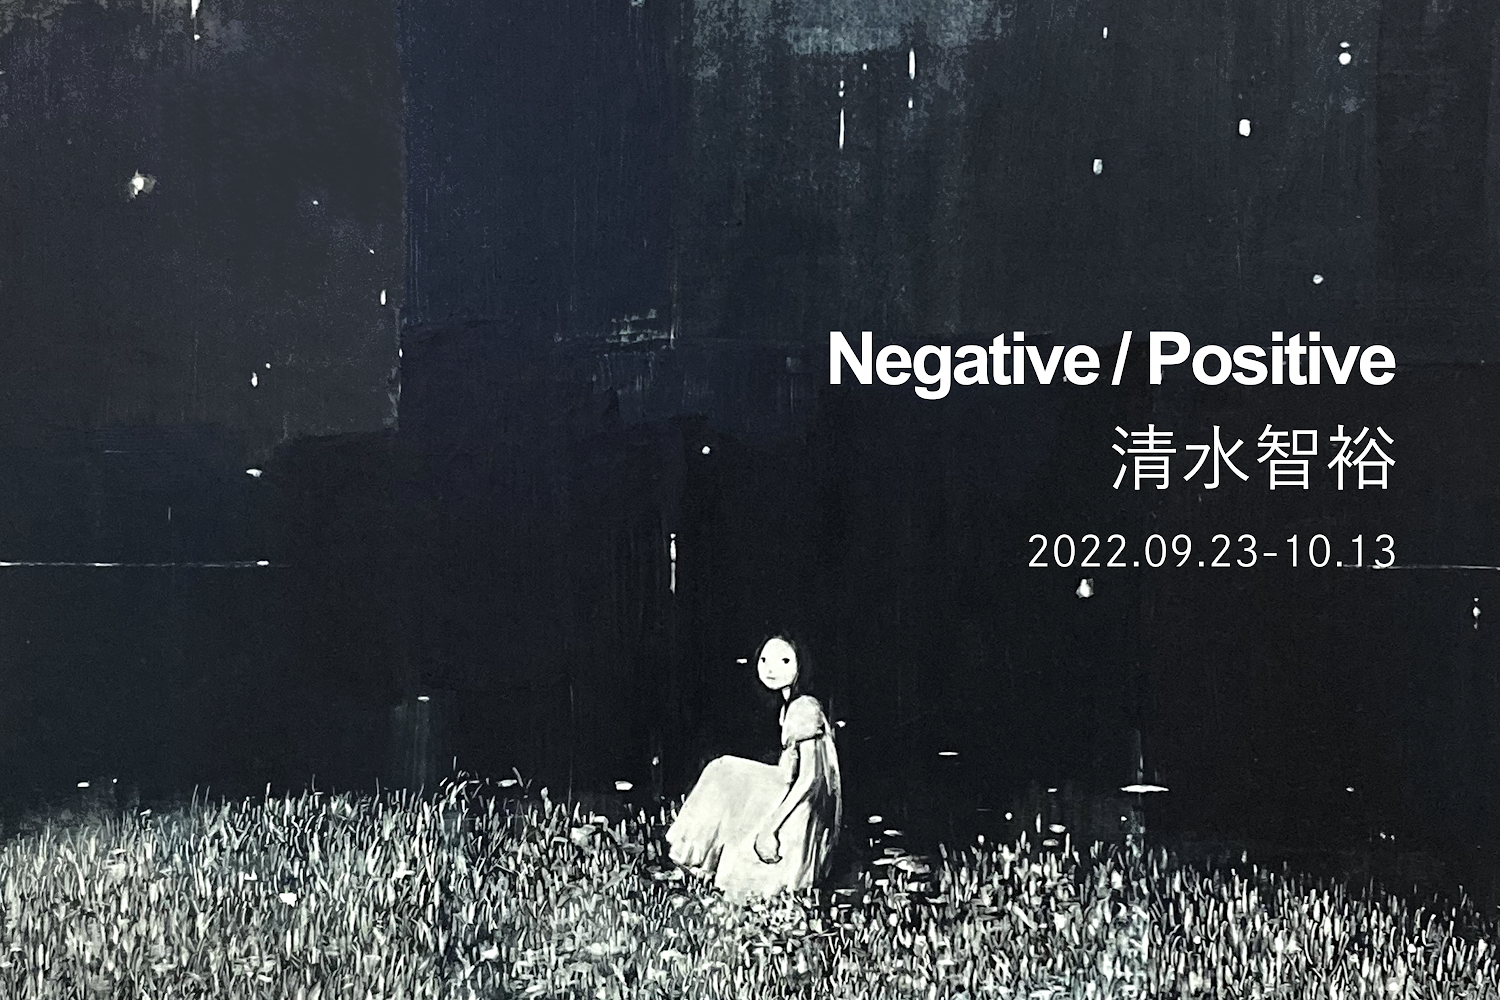 清水智裕「Negative/Positive」 | tagboat